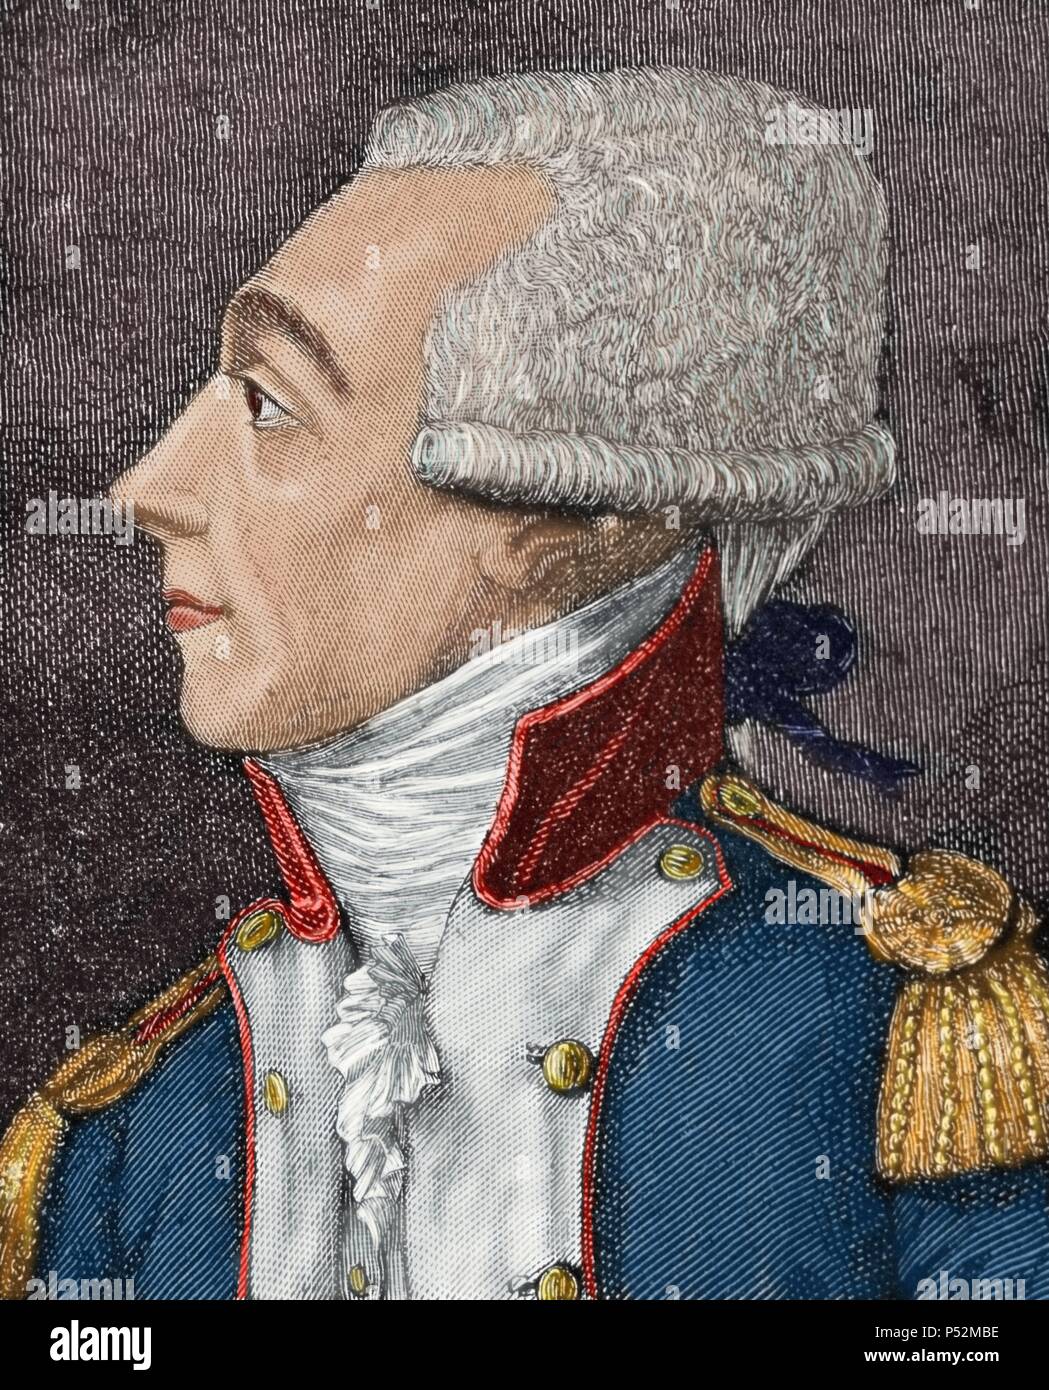 Marie-Joseph Paul Yves Roch Gilbert du Motier, Marquis de La Fayette (1757-1834), bekannt als einfach Lafayette. Französischen Aristokraten und Offizier. Lafayette war ein General im amerikanischen Unabhängigkeitskrieg und ein Führer der Garde nationale während der Französischen Revolution. Farbige Gravur. 19. Stockfoto